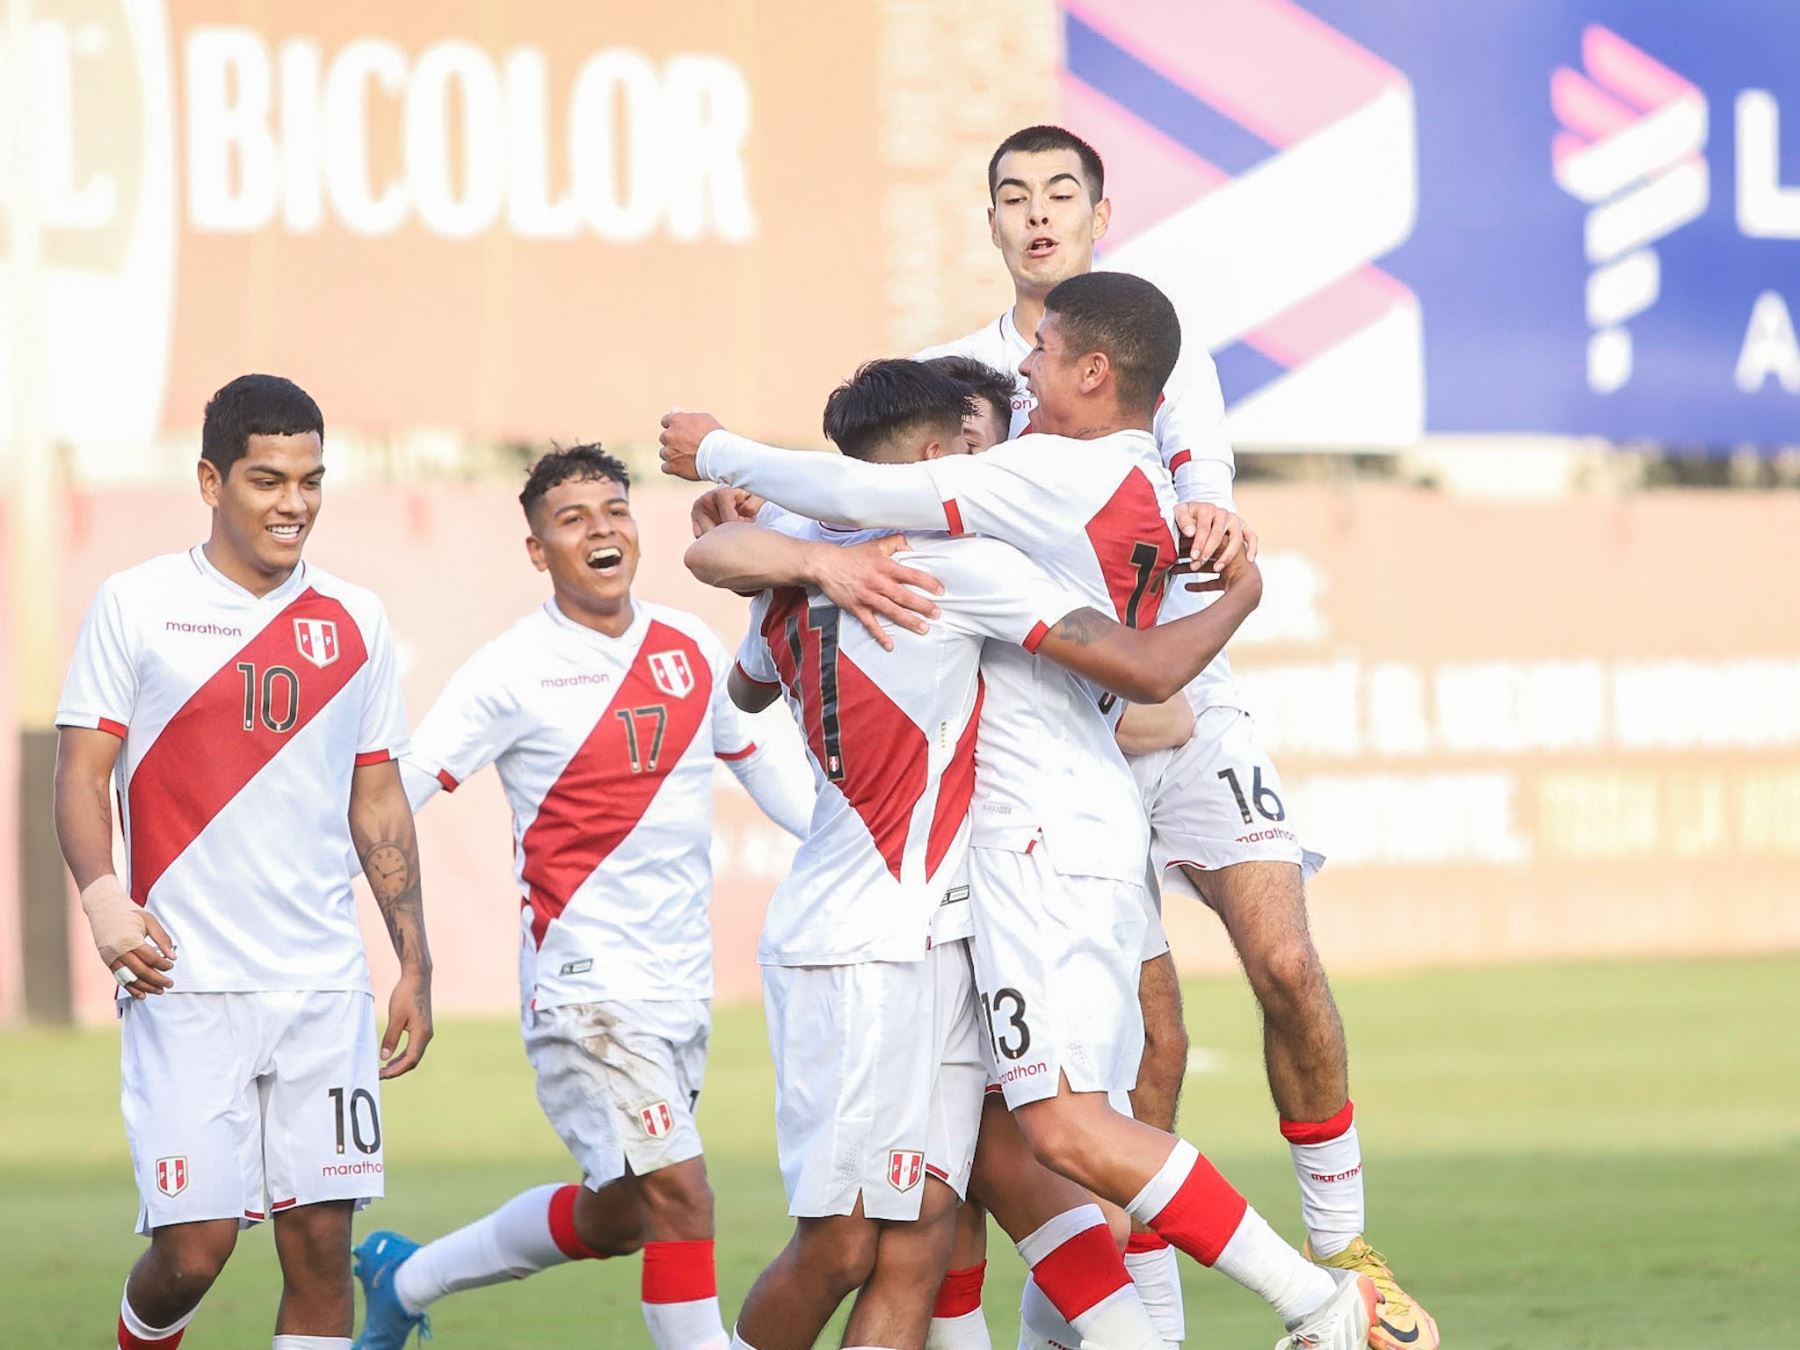 La selección peruana sub-20 enfrentará cuatro partidos amistosos antes de afrontar el Campeonato Sudamericano Sub-20 Colombia 2023